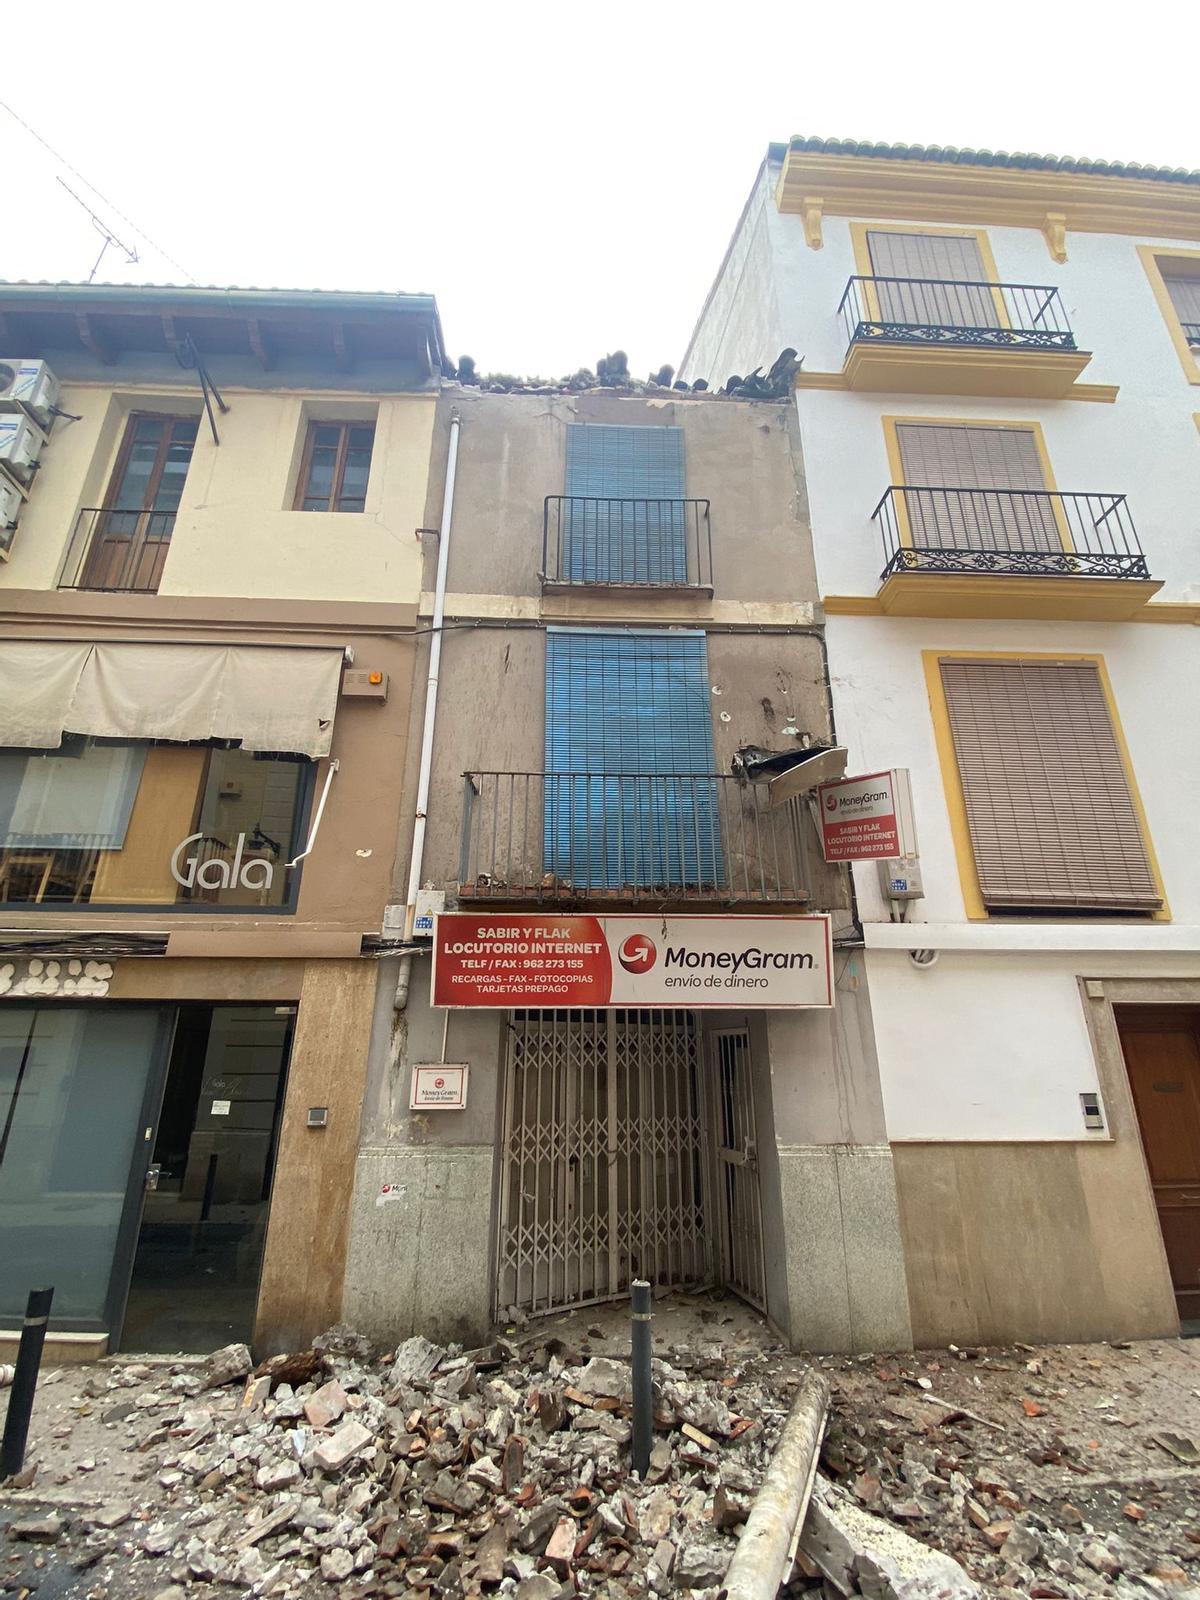 El inmueble cuyo voladizo se desprendió en diciembre en la calle Hostals de Xàtiva.